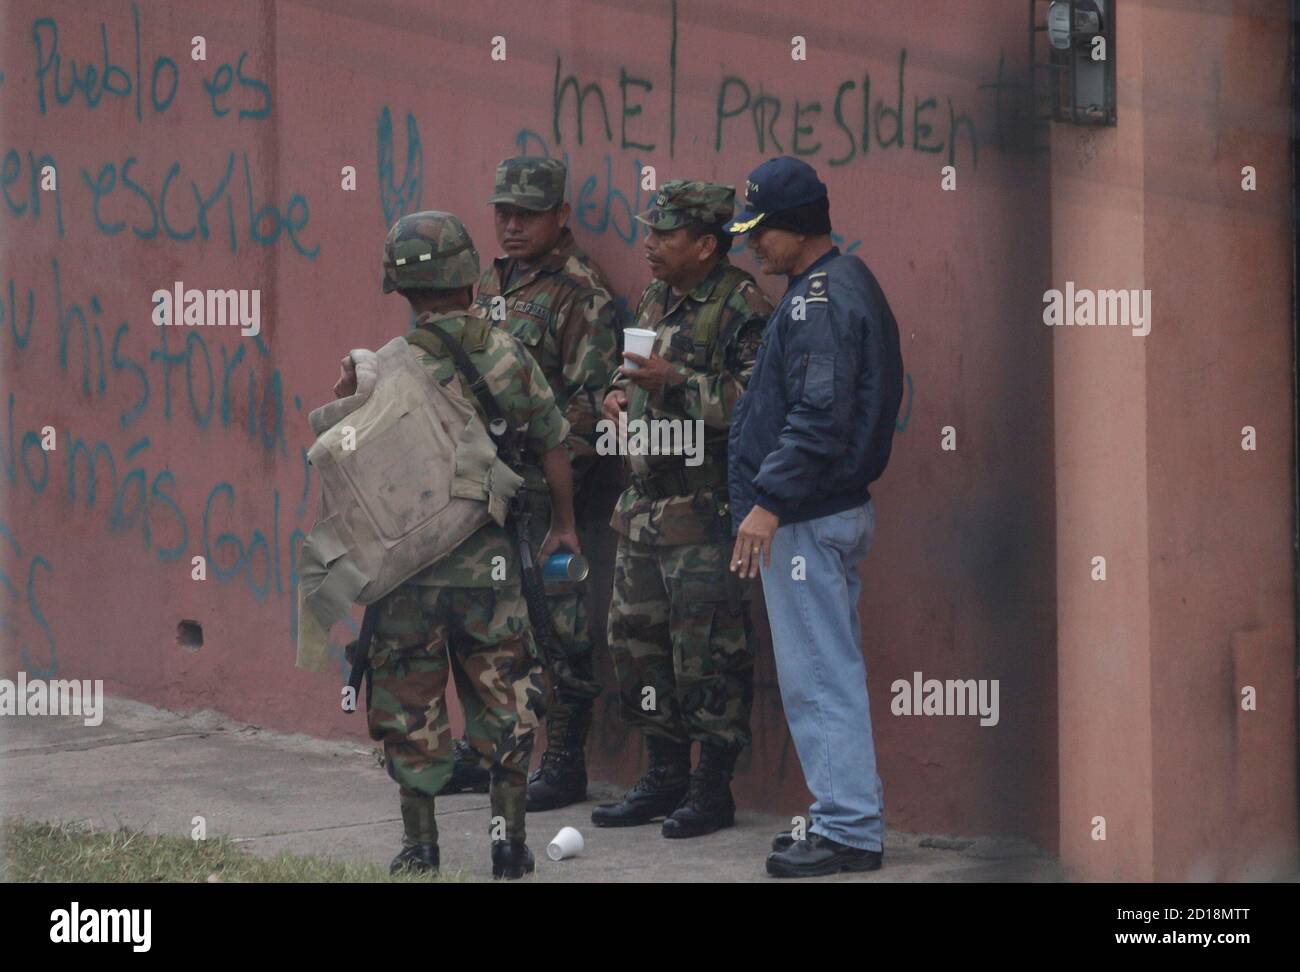 Kaffee trinken Soldaten vor der brasilianischen Botschaft in Tegucigalpa 25. September 2009. Hunderte von Soldaten und Polizei mit automatischen Waffen haben die brasilianische Botschaft umgeben, wo Zelaya mit seiner Familie und rund 40 Helfern trotz Essen und Wasserknappheit im Gebäude Zuflucht ist.  Die Graffiti an der Wand liest "Mel (Zelaya) Präsident".    REUTERS/Edgard Garrido (HONDURAS-Politik-Konflikt) Stockfoto